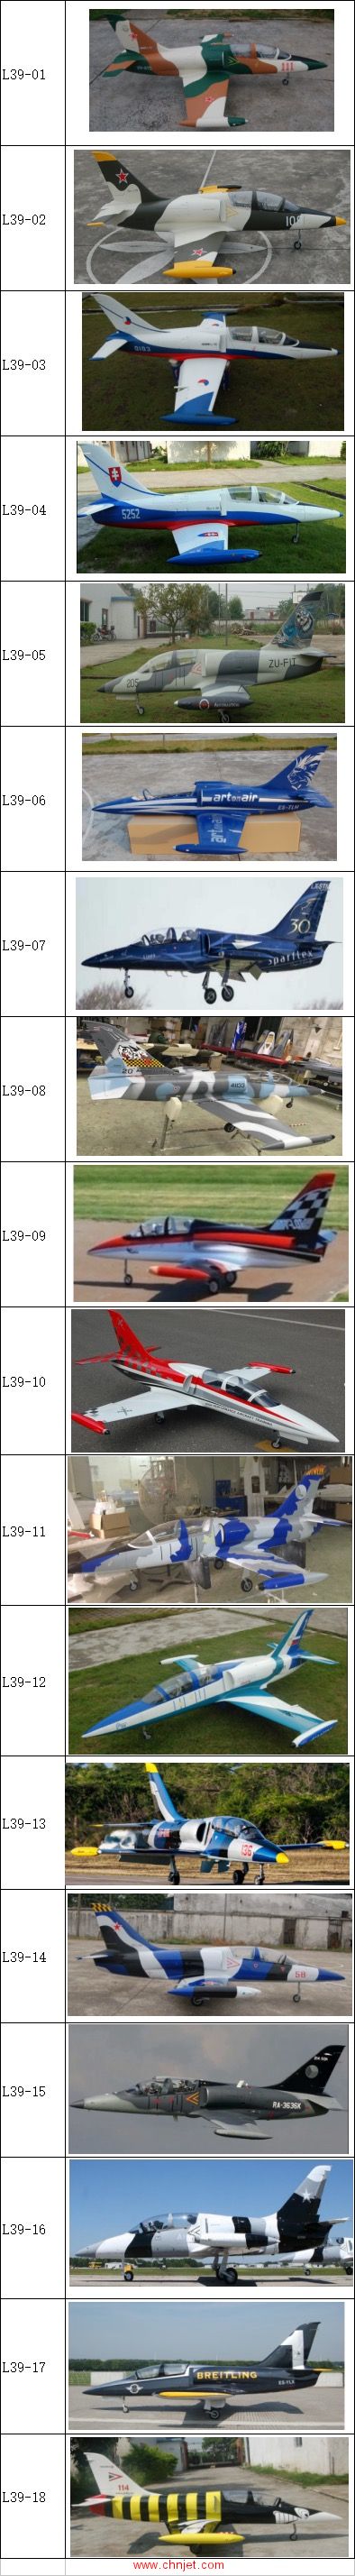 SPARK涡喷模型飞机涂装表